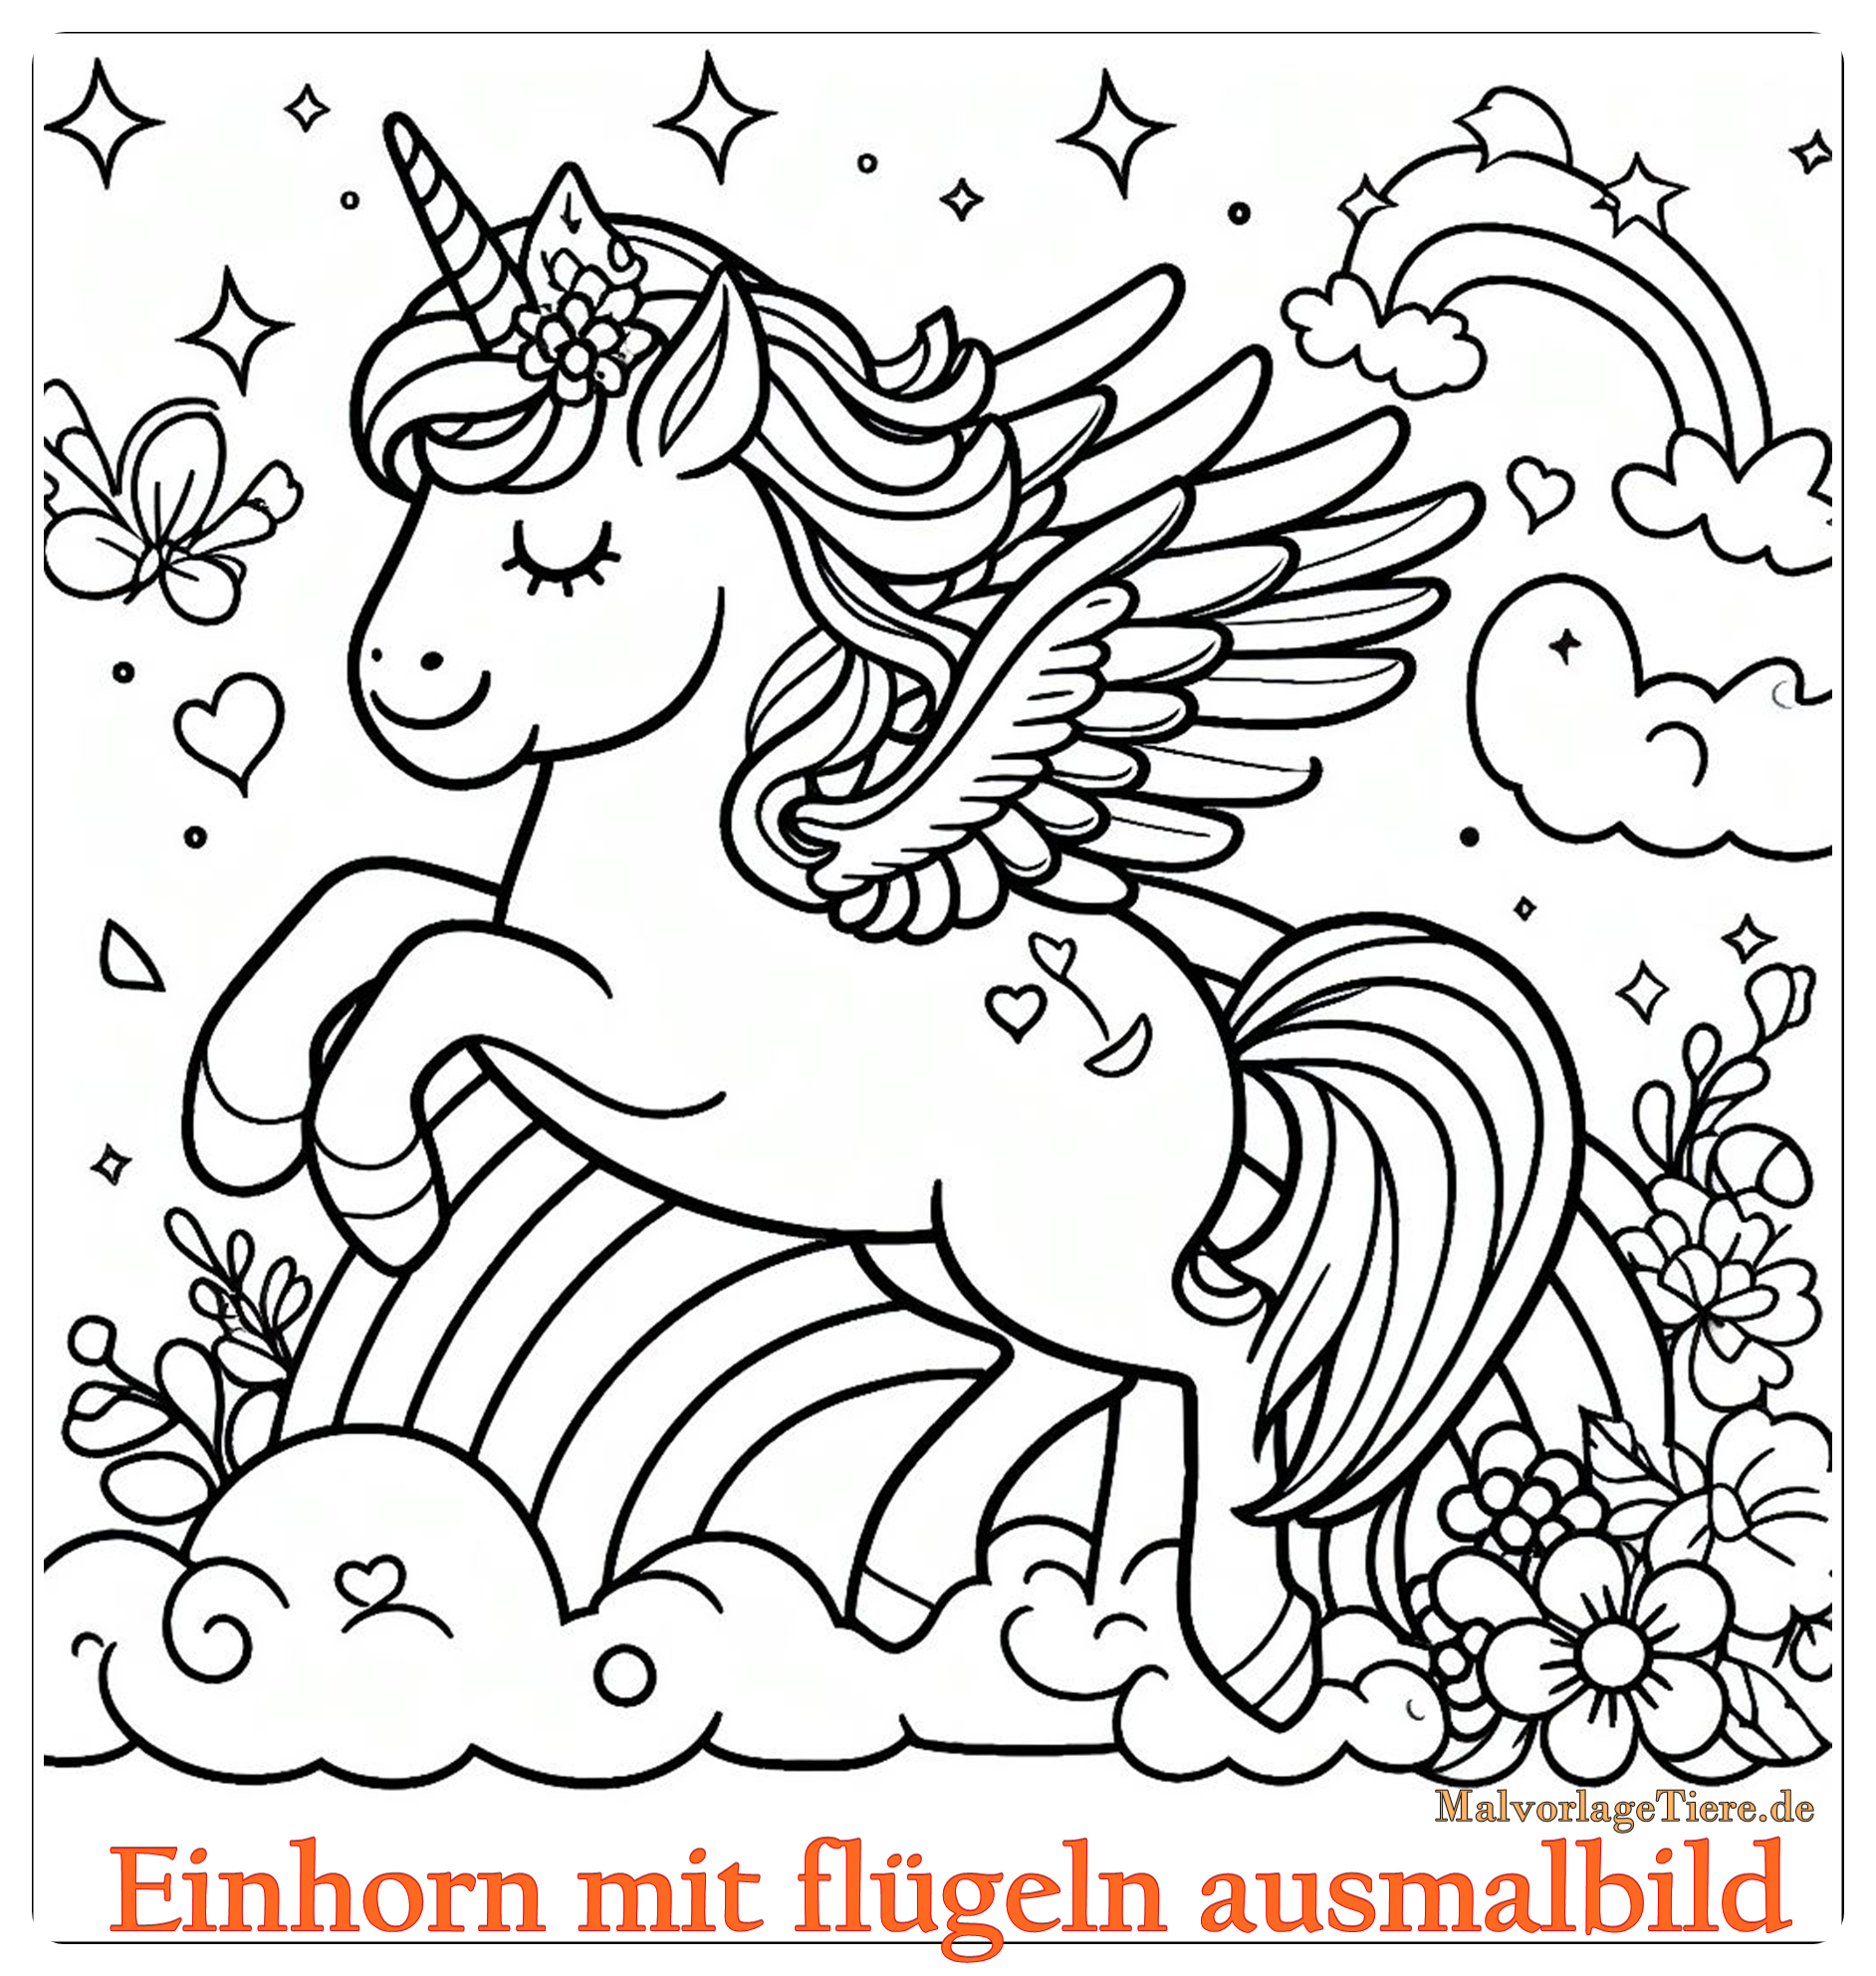 Einhorn mit flügeln ausmalbild 08 by malvorlagetiere.de